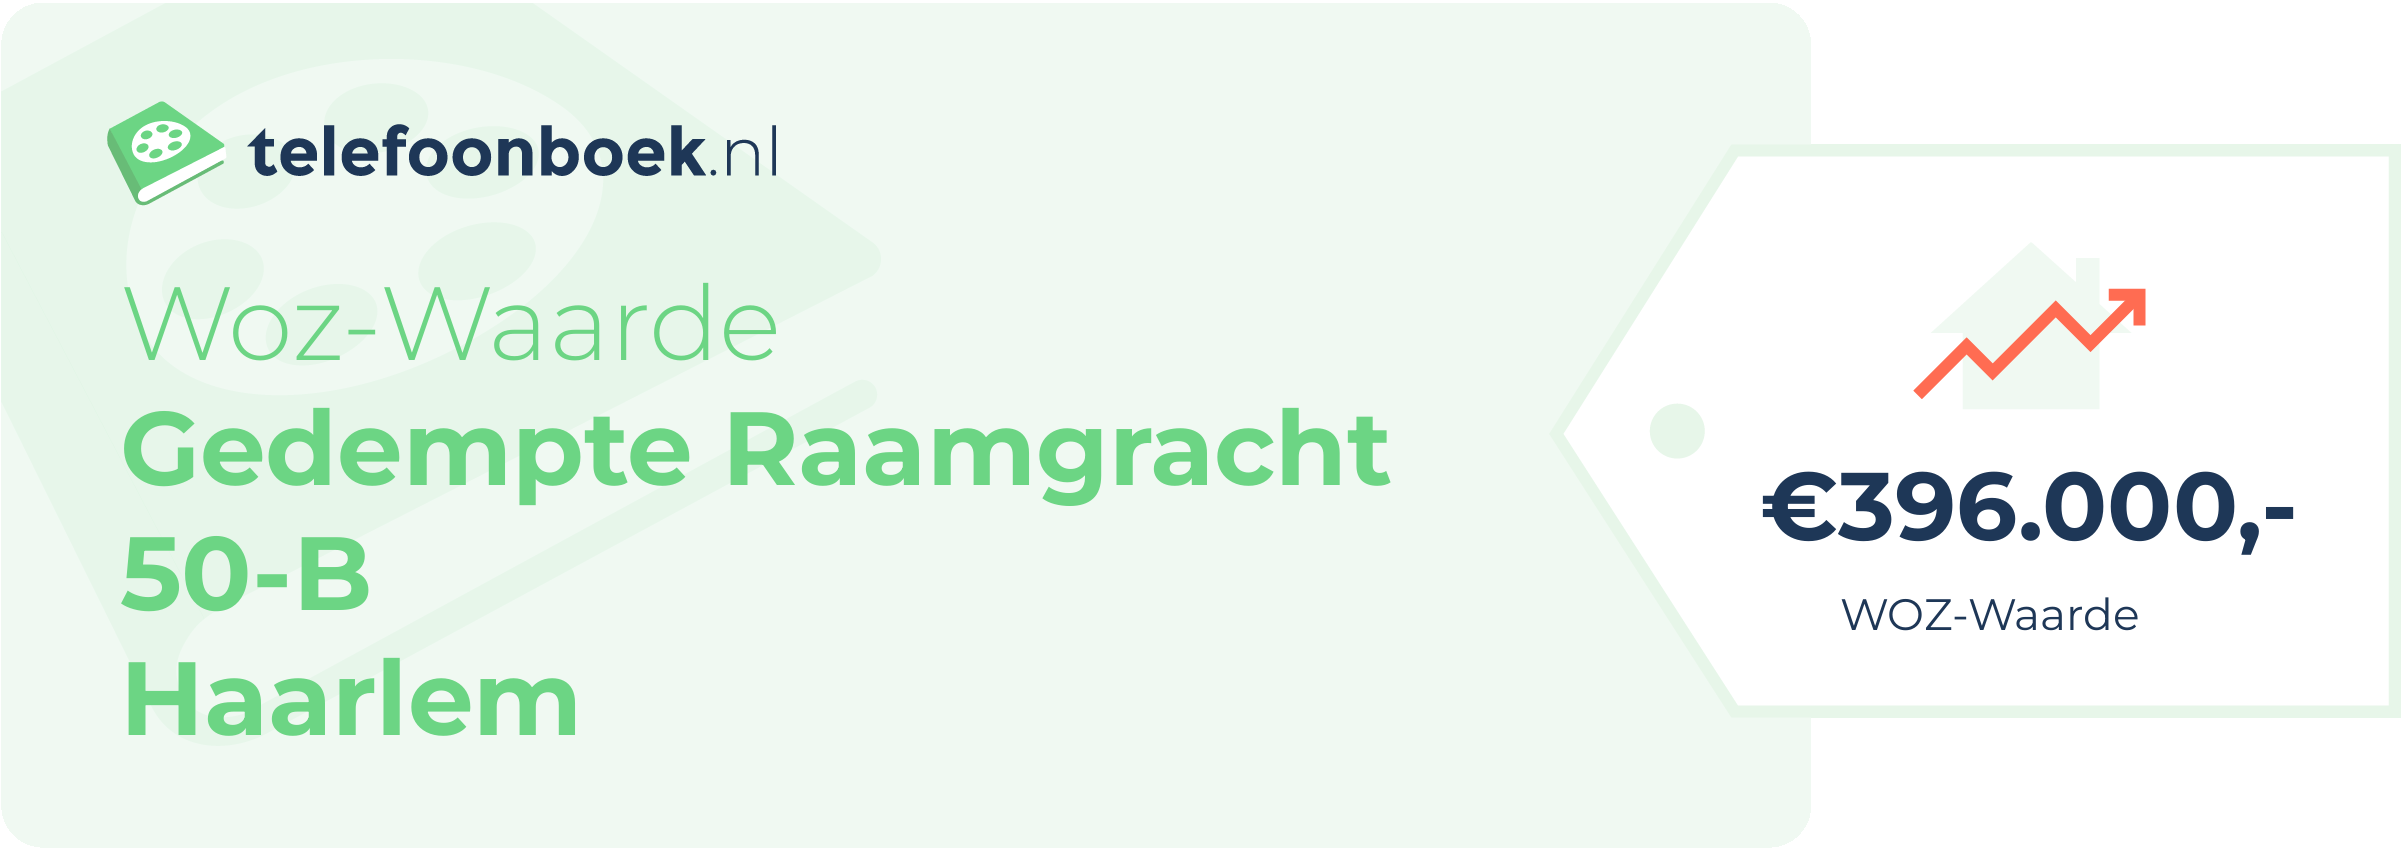 WOZ-waarde Gedempte Raamgracht 50-B Haarlem